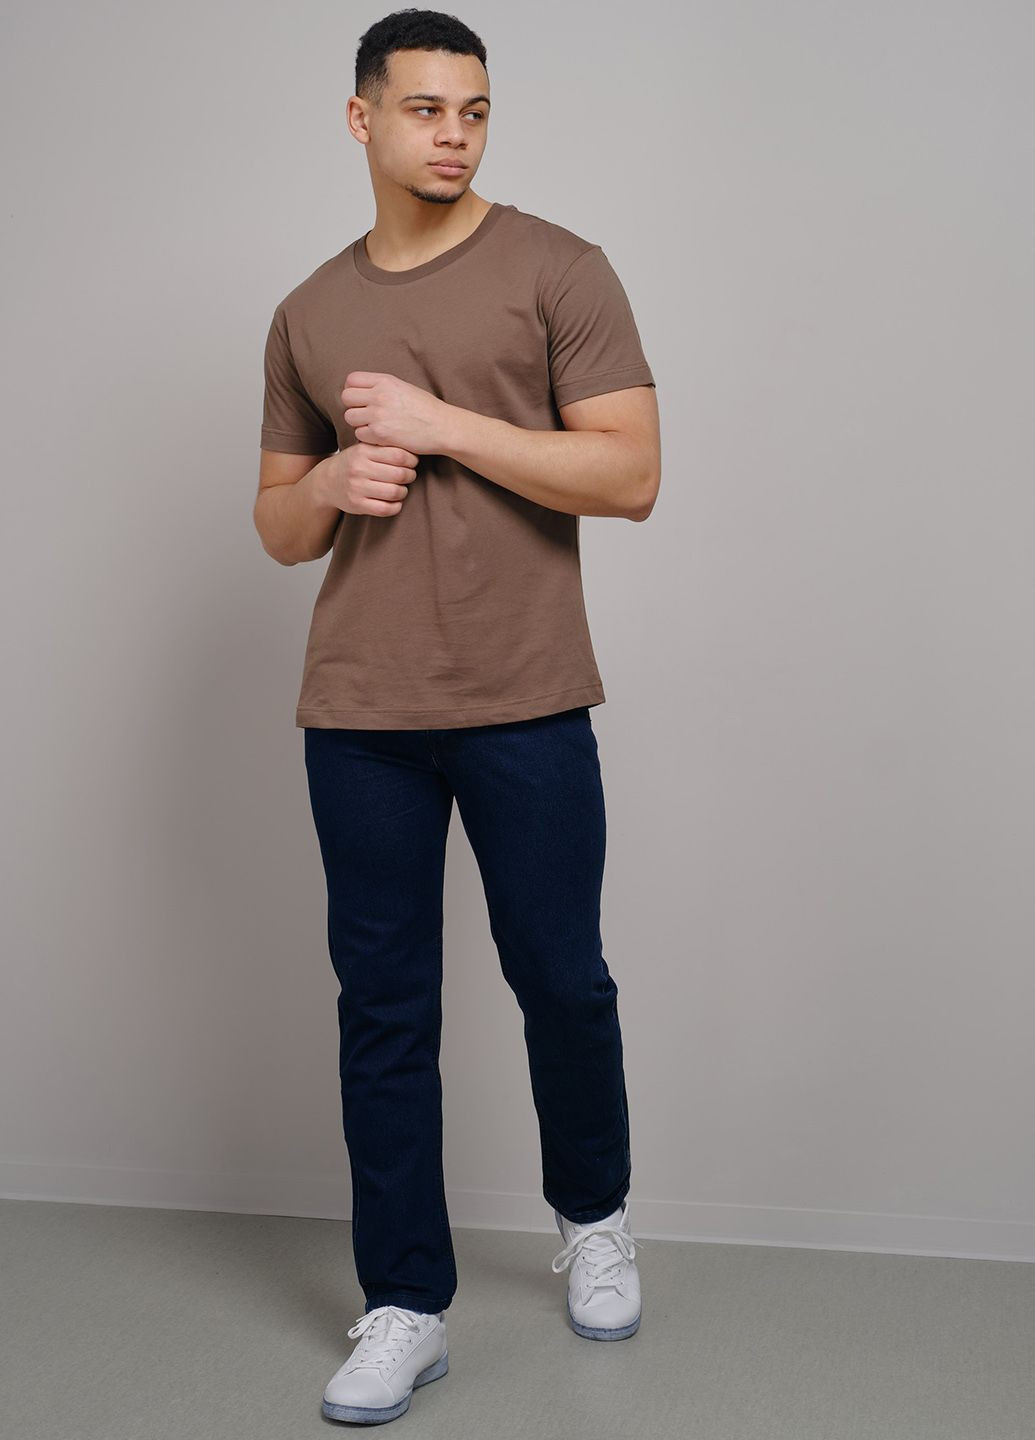 Коричневая футболка мужская базовая коричневая 102932 Power